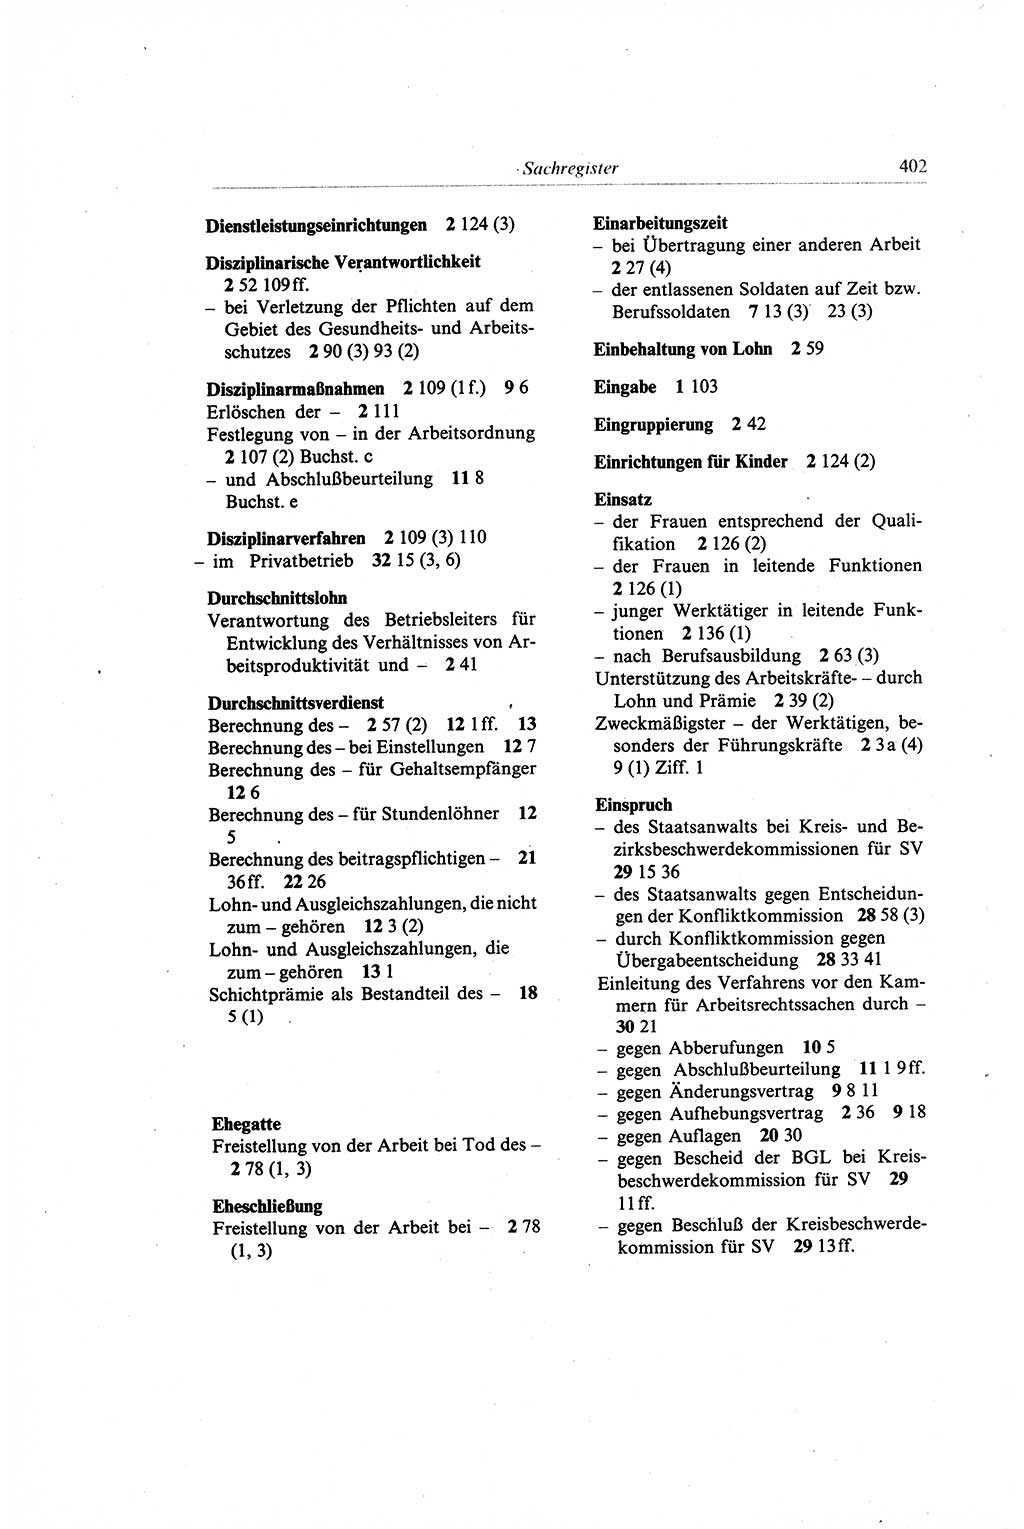 Gesetzbuch der Arbeit (GBA) und andere ausgewählte rechtliche Bestimmungen [Deutsche Demokratische Republik (DDR)] 1968, Seite 402 (GBA DDR 1968, S. 402)